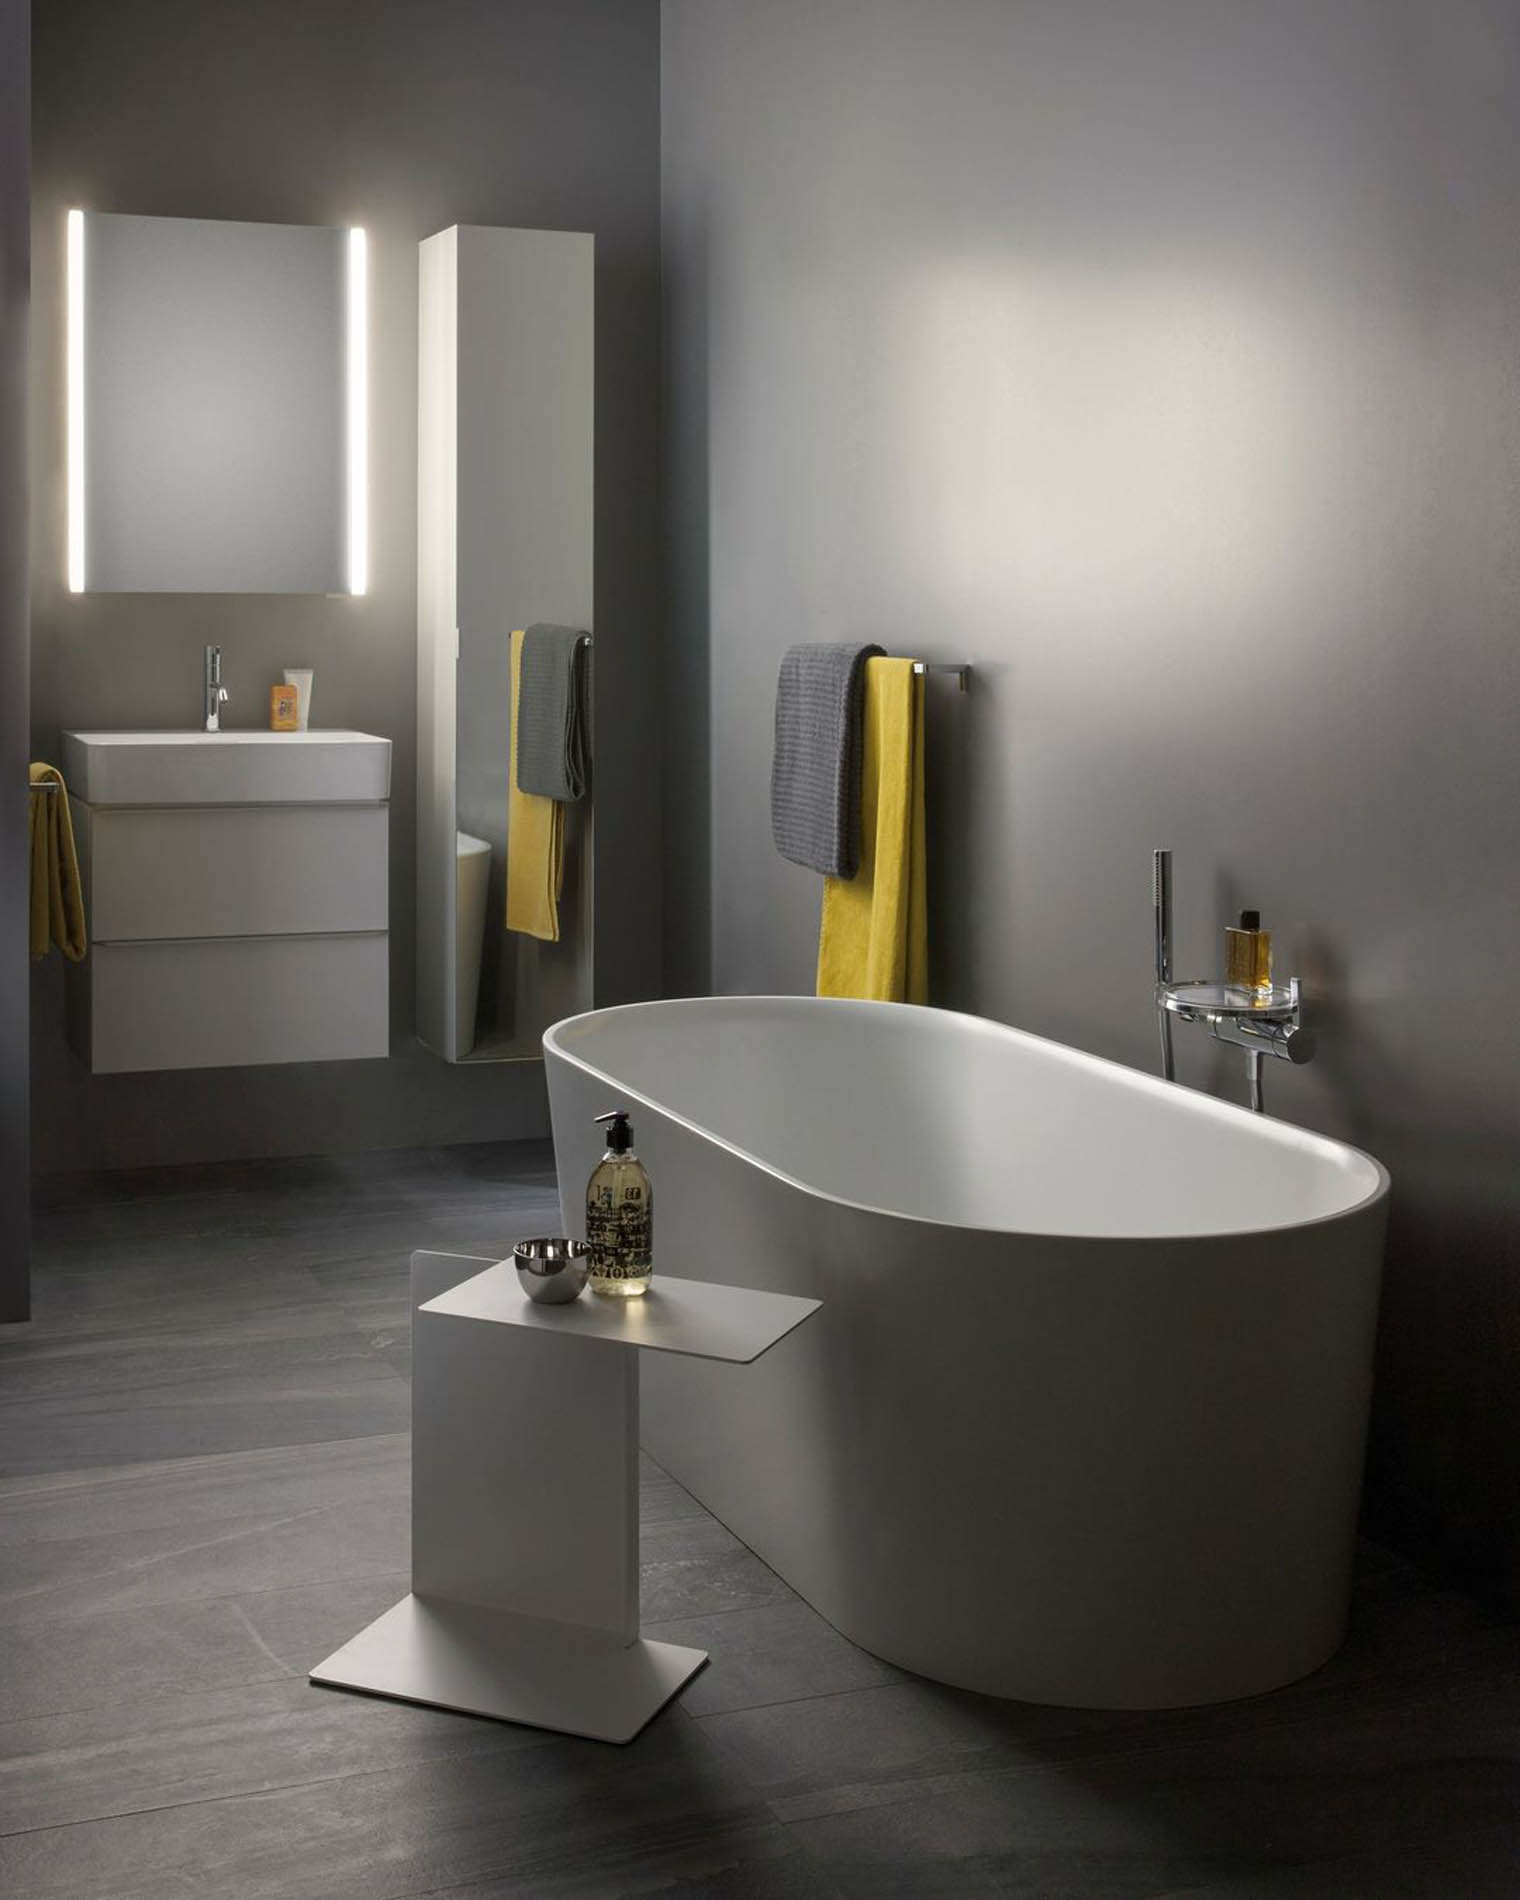 Presentamos en Barcelona unas bañeras de diseño minimalista